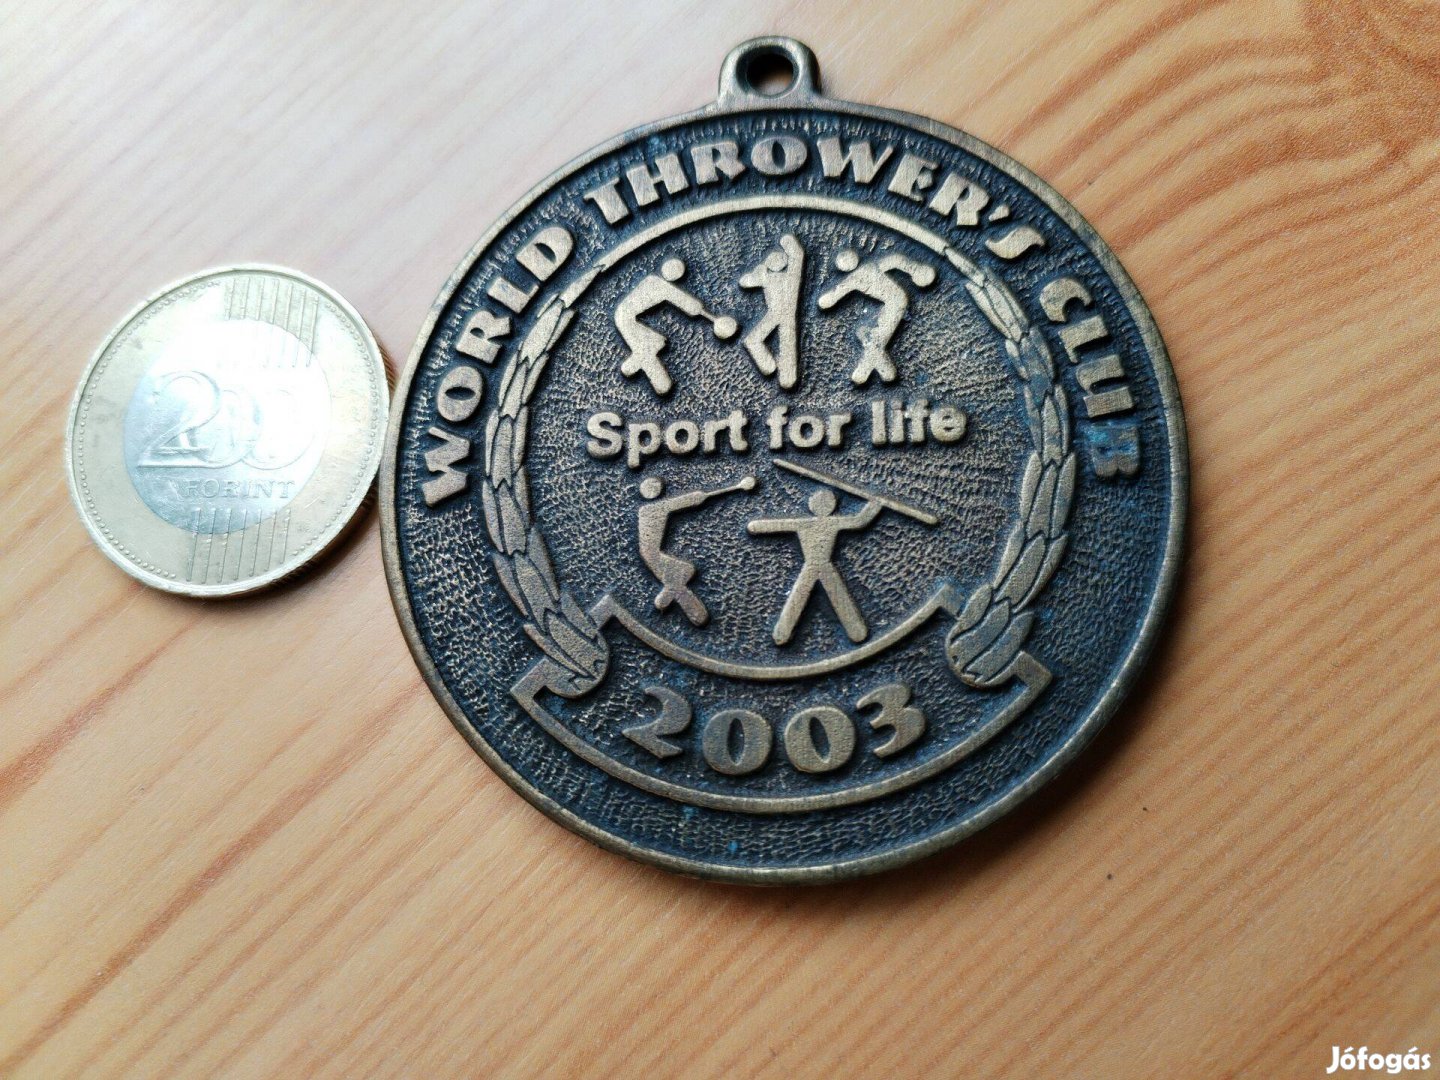 Tata 2003-as Dobó Világbajnokság bronz érem